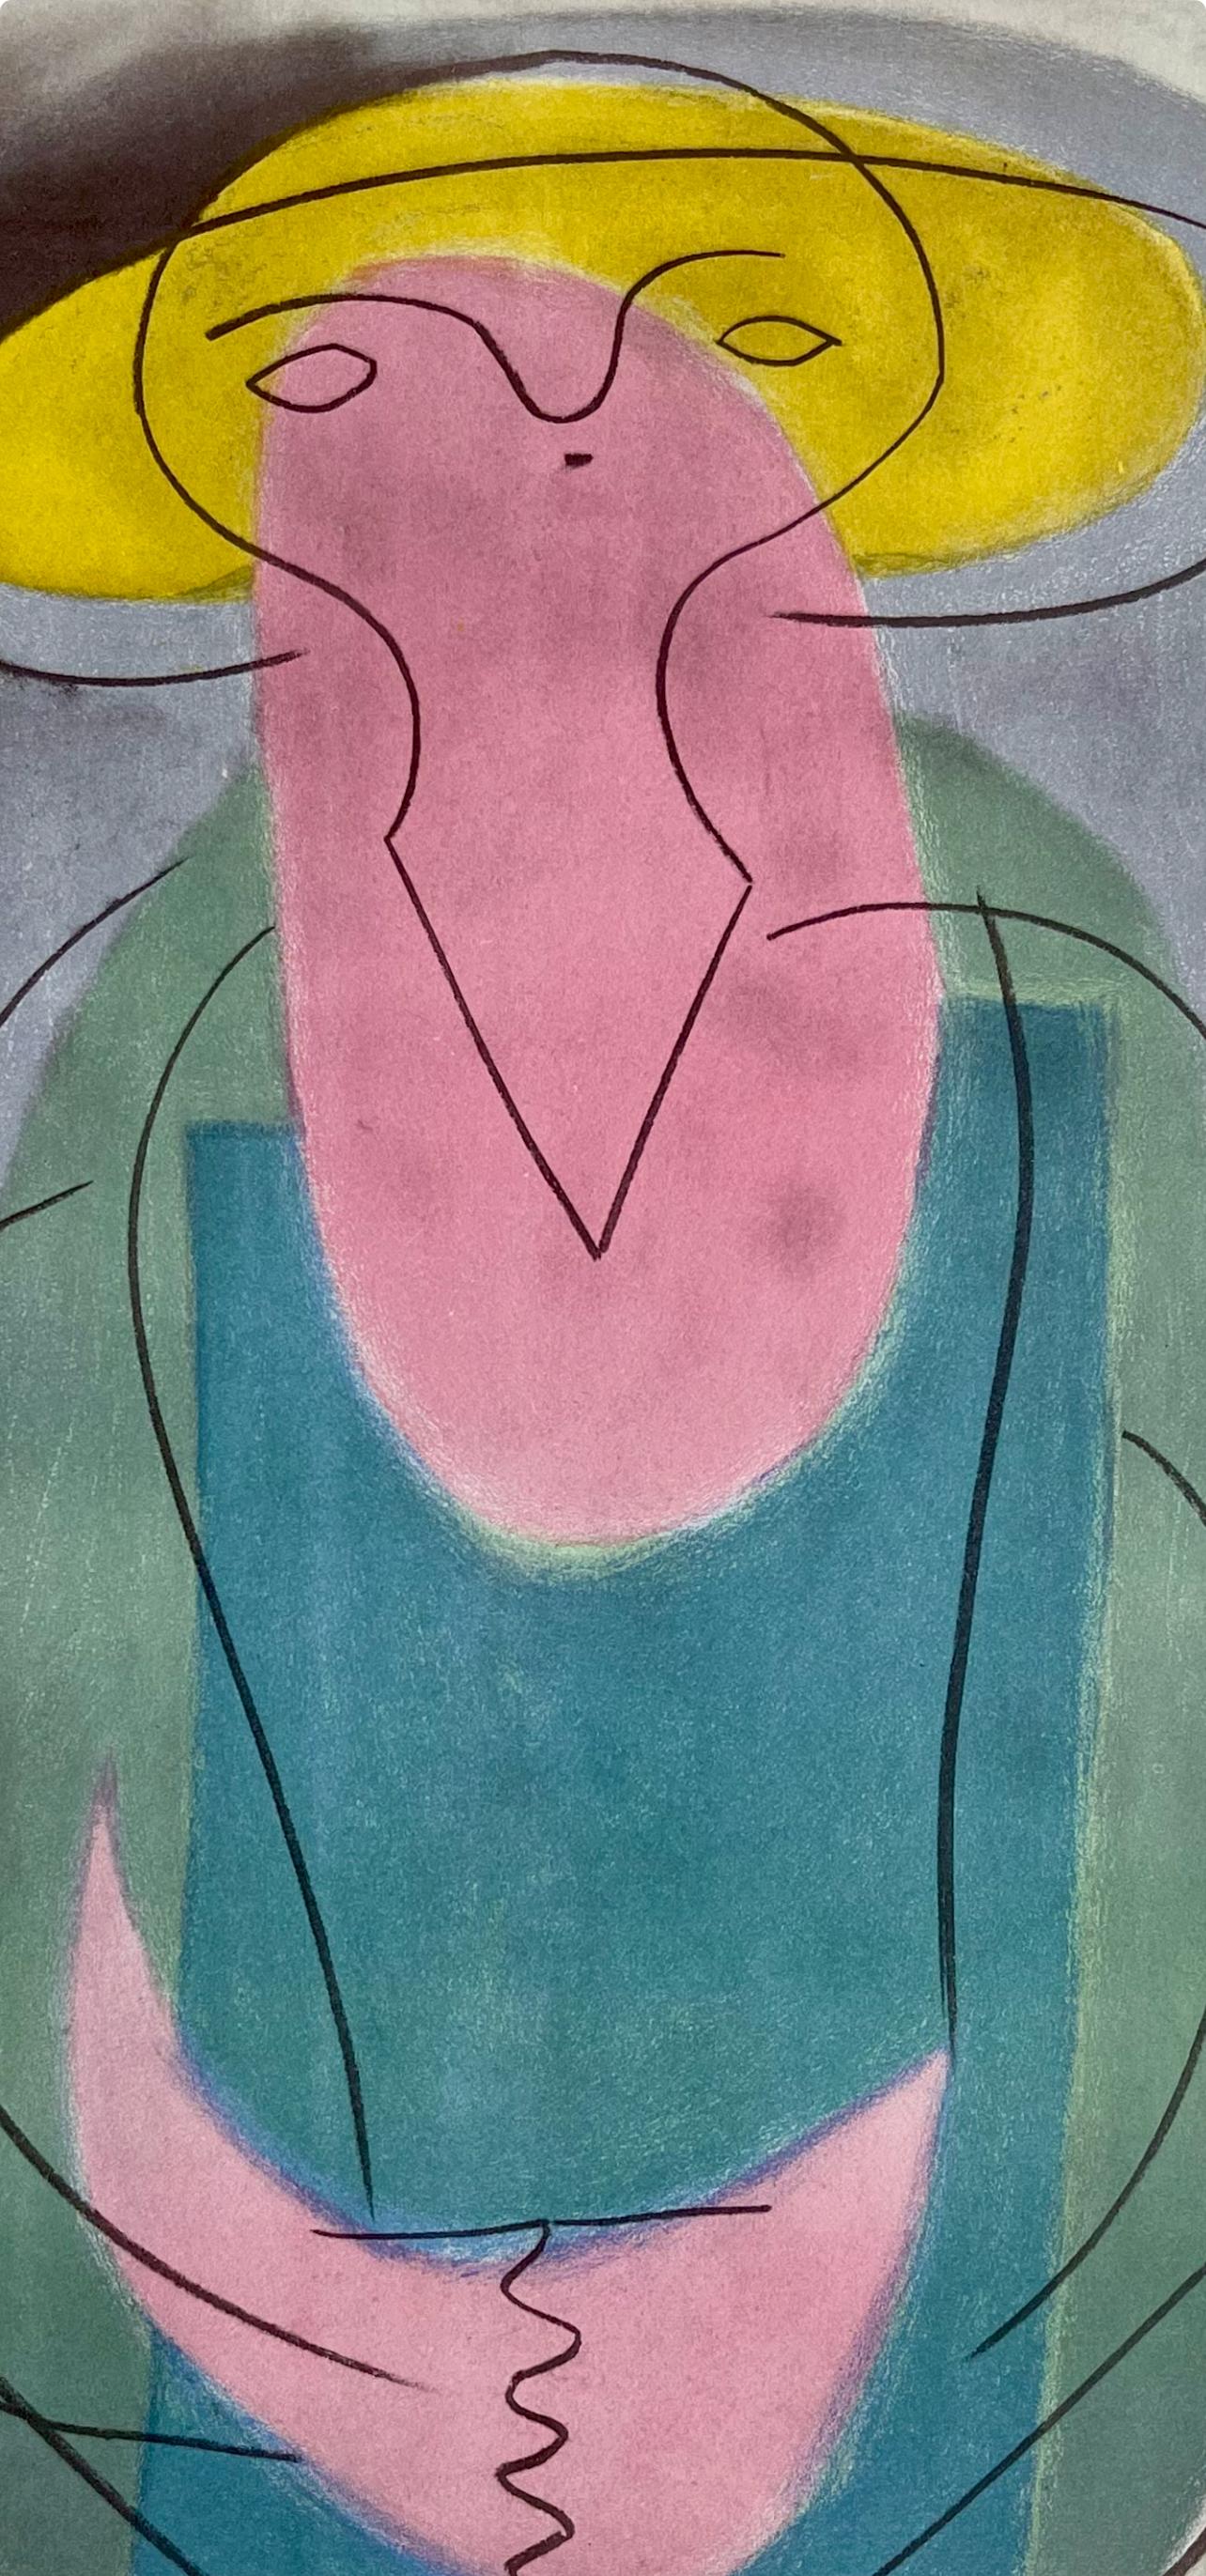 Picasso, Portrait of a Lady, Picasso : quinze dessins (d'après) - Print de Pablo Picasso